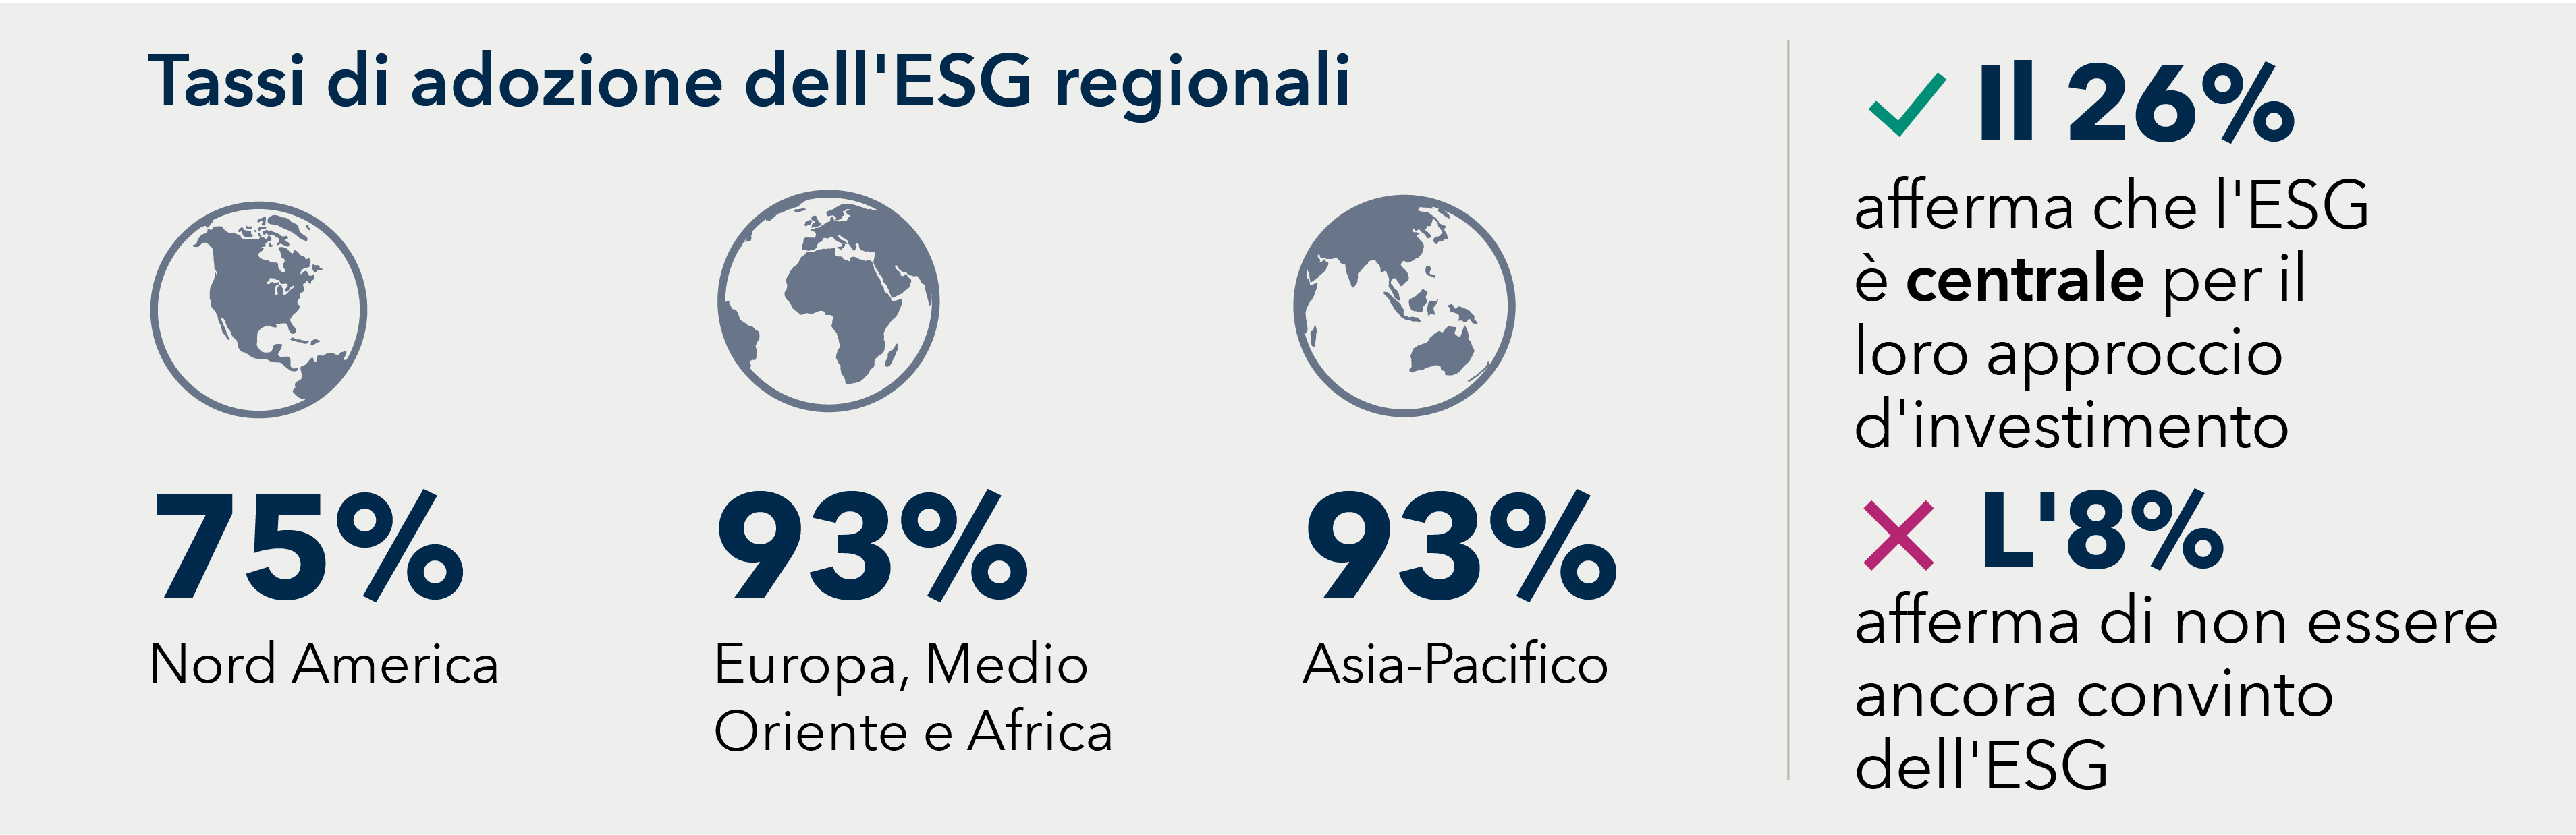 Tassi di adozione dell'ESG regionali